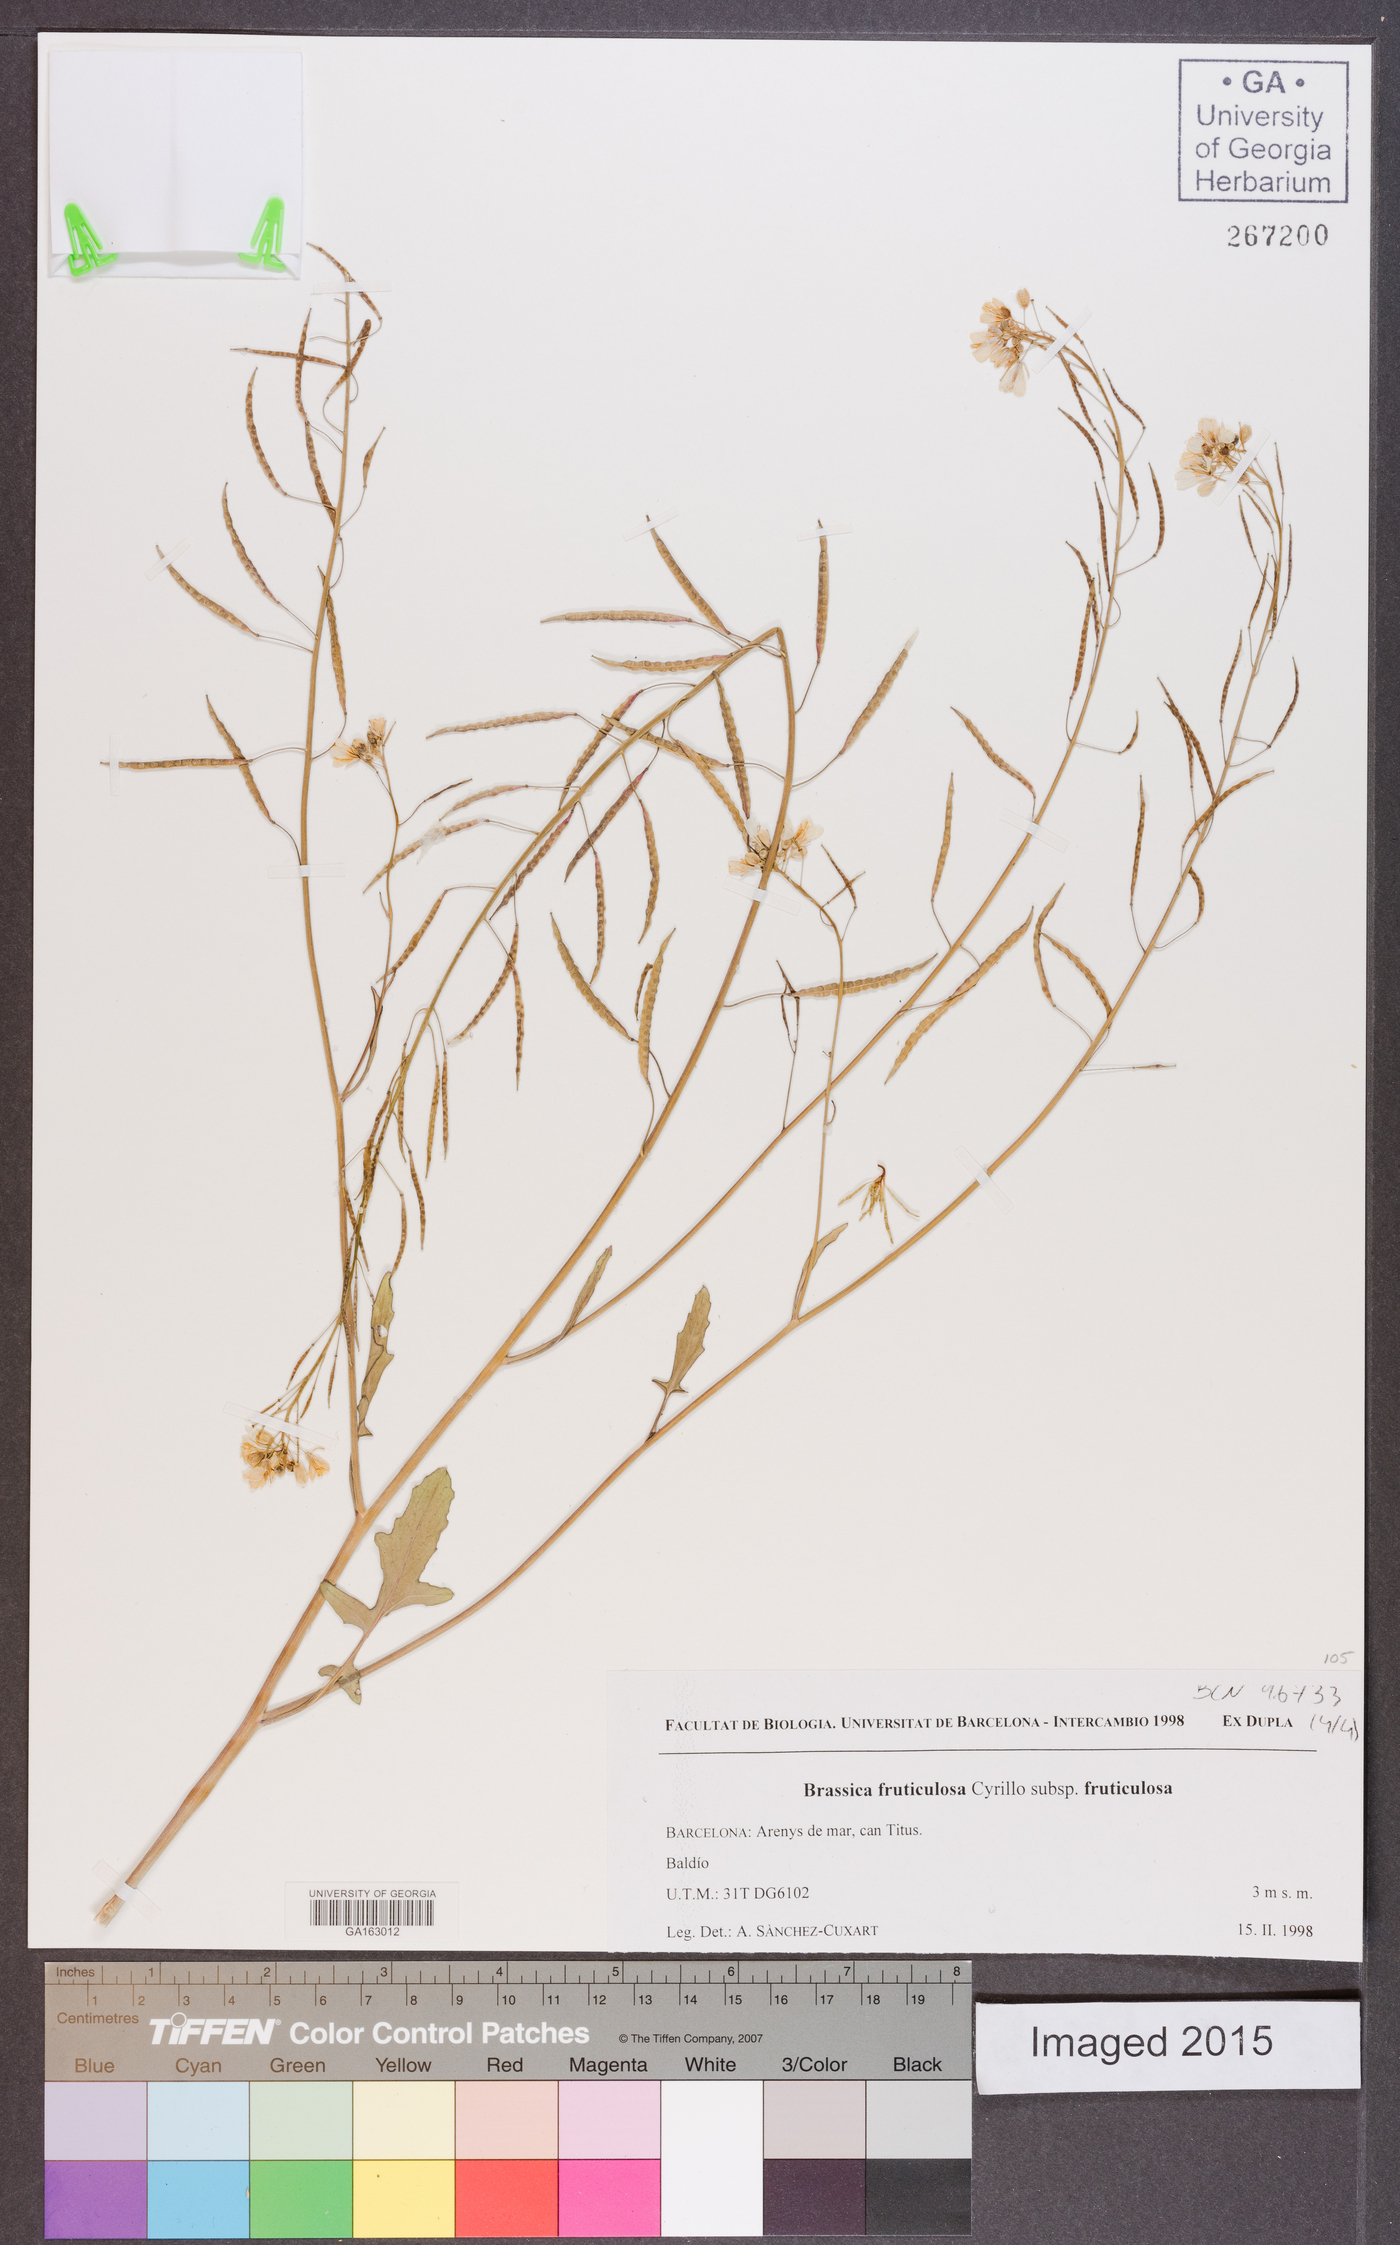 Brassica fruticulosa subsp. fruticulosa image